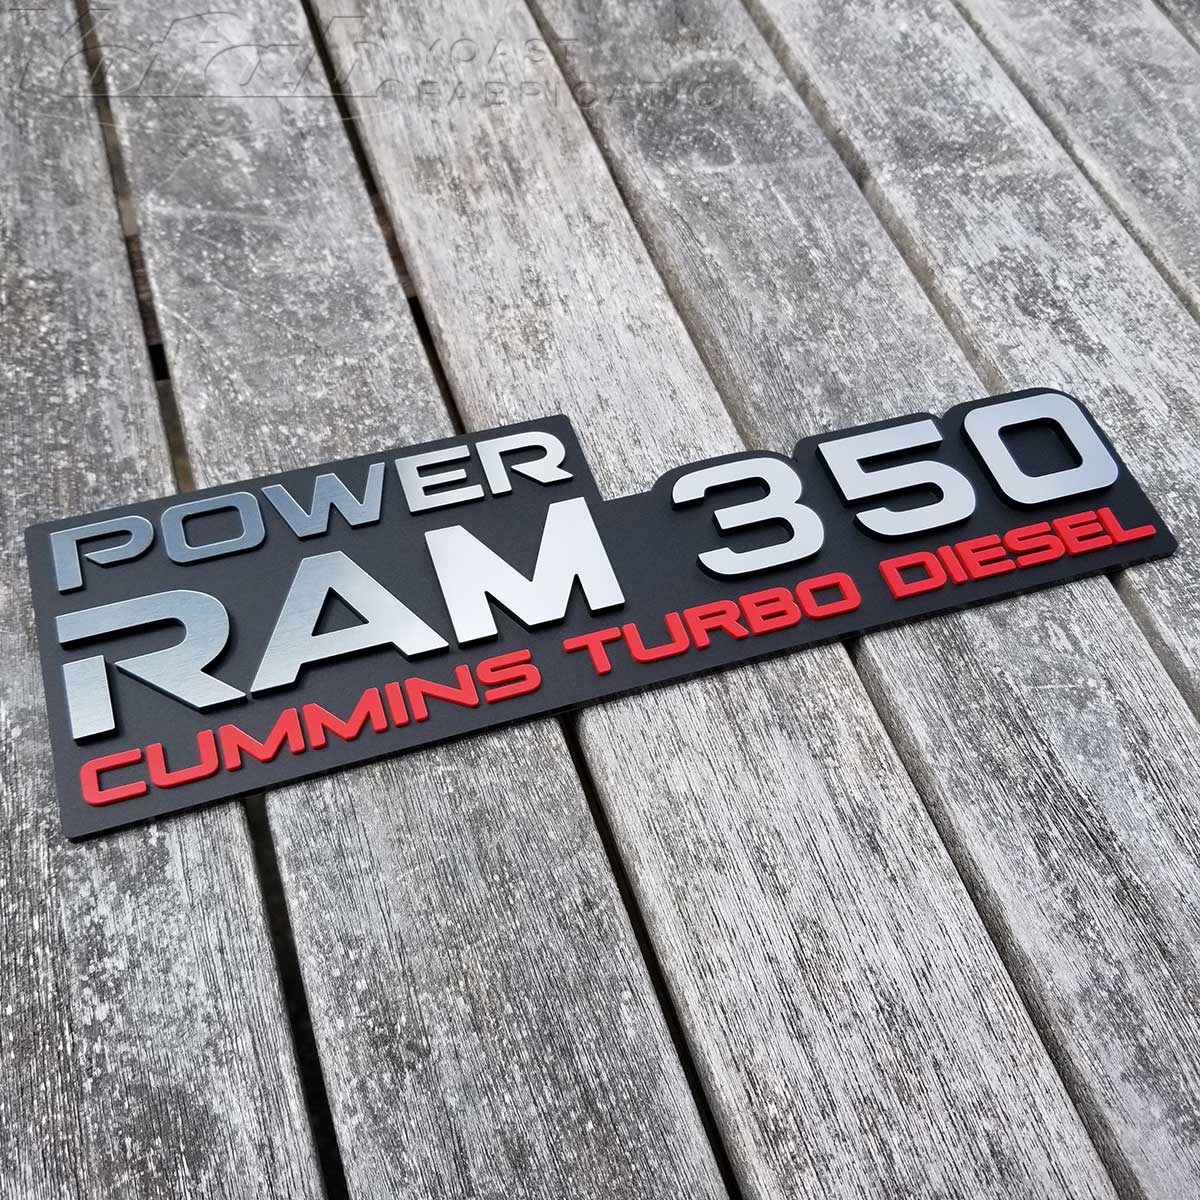 Power Ram 350 Turbo Diesel Badge